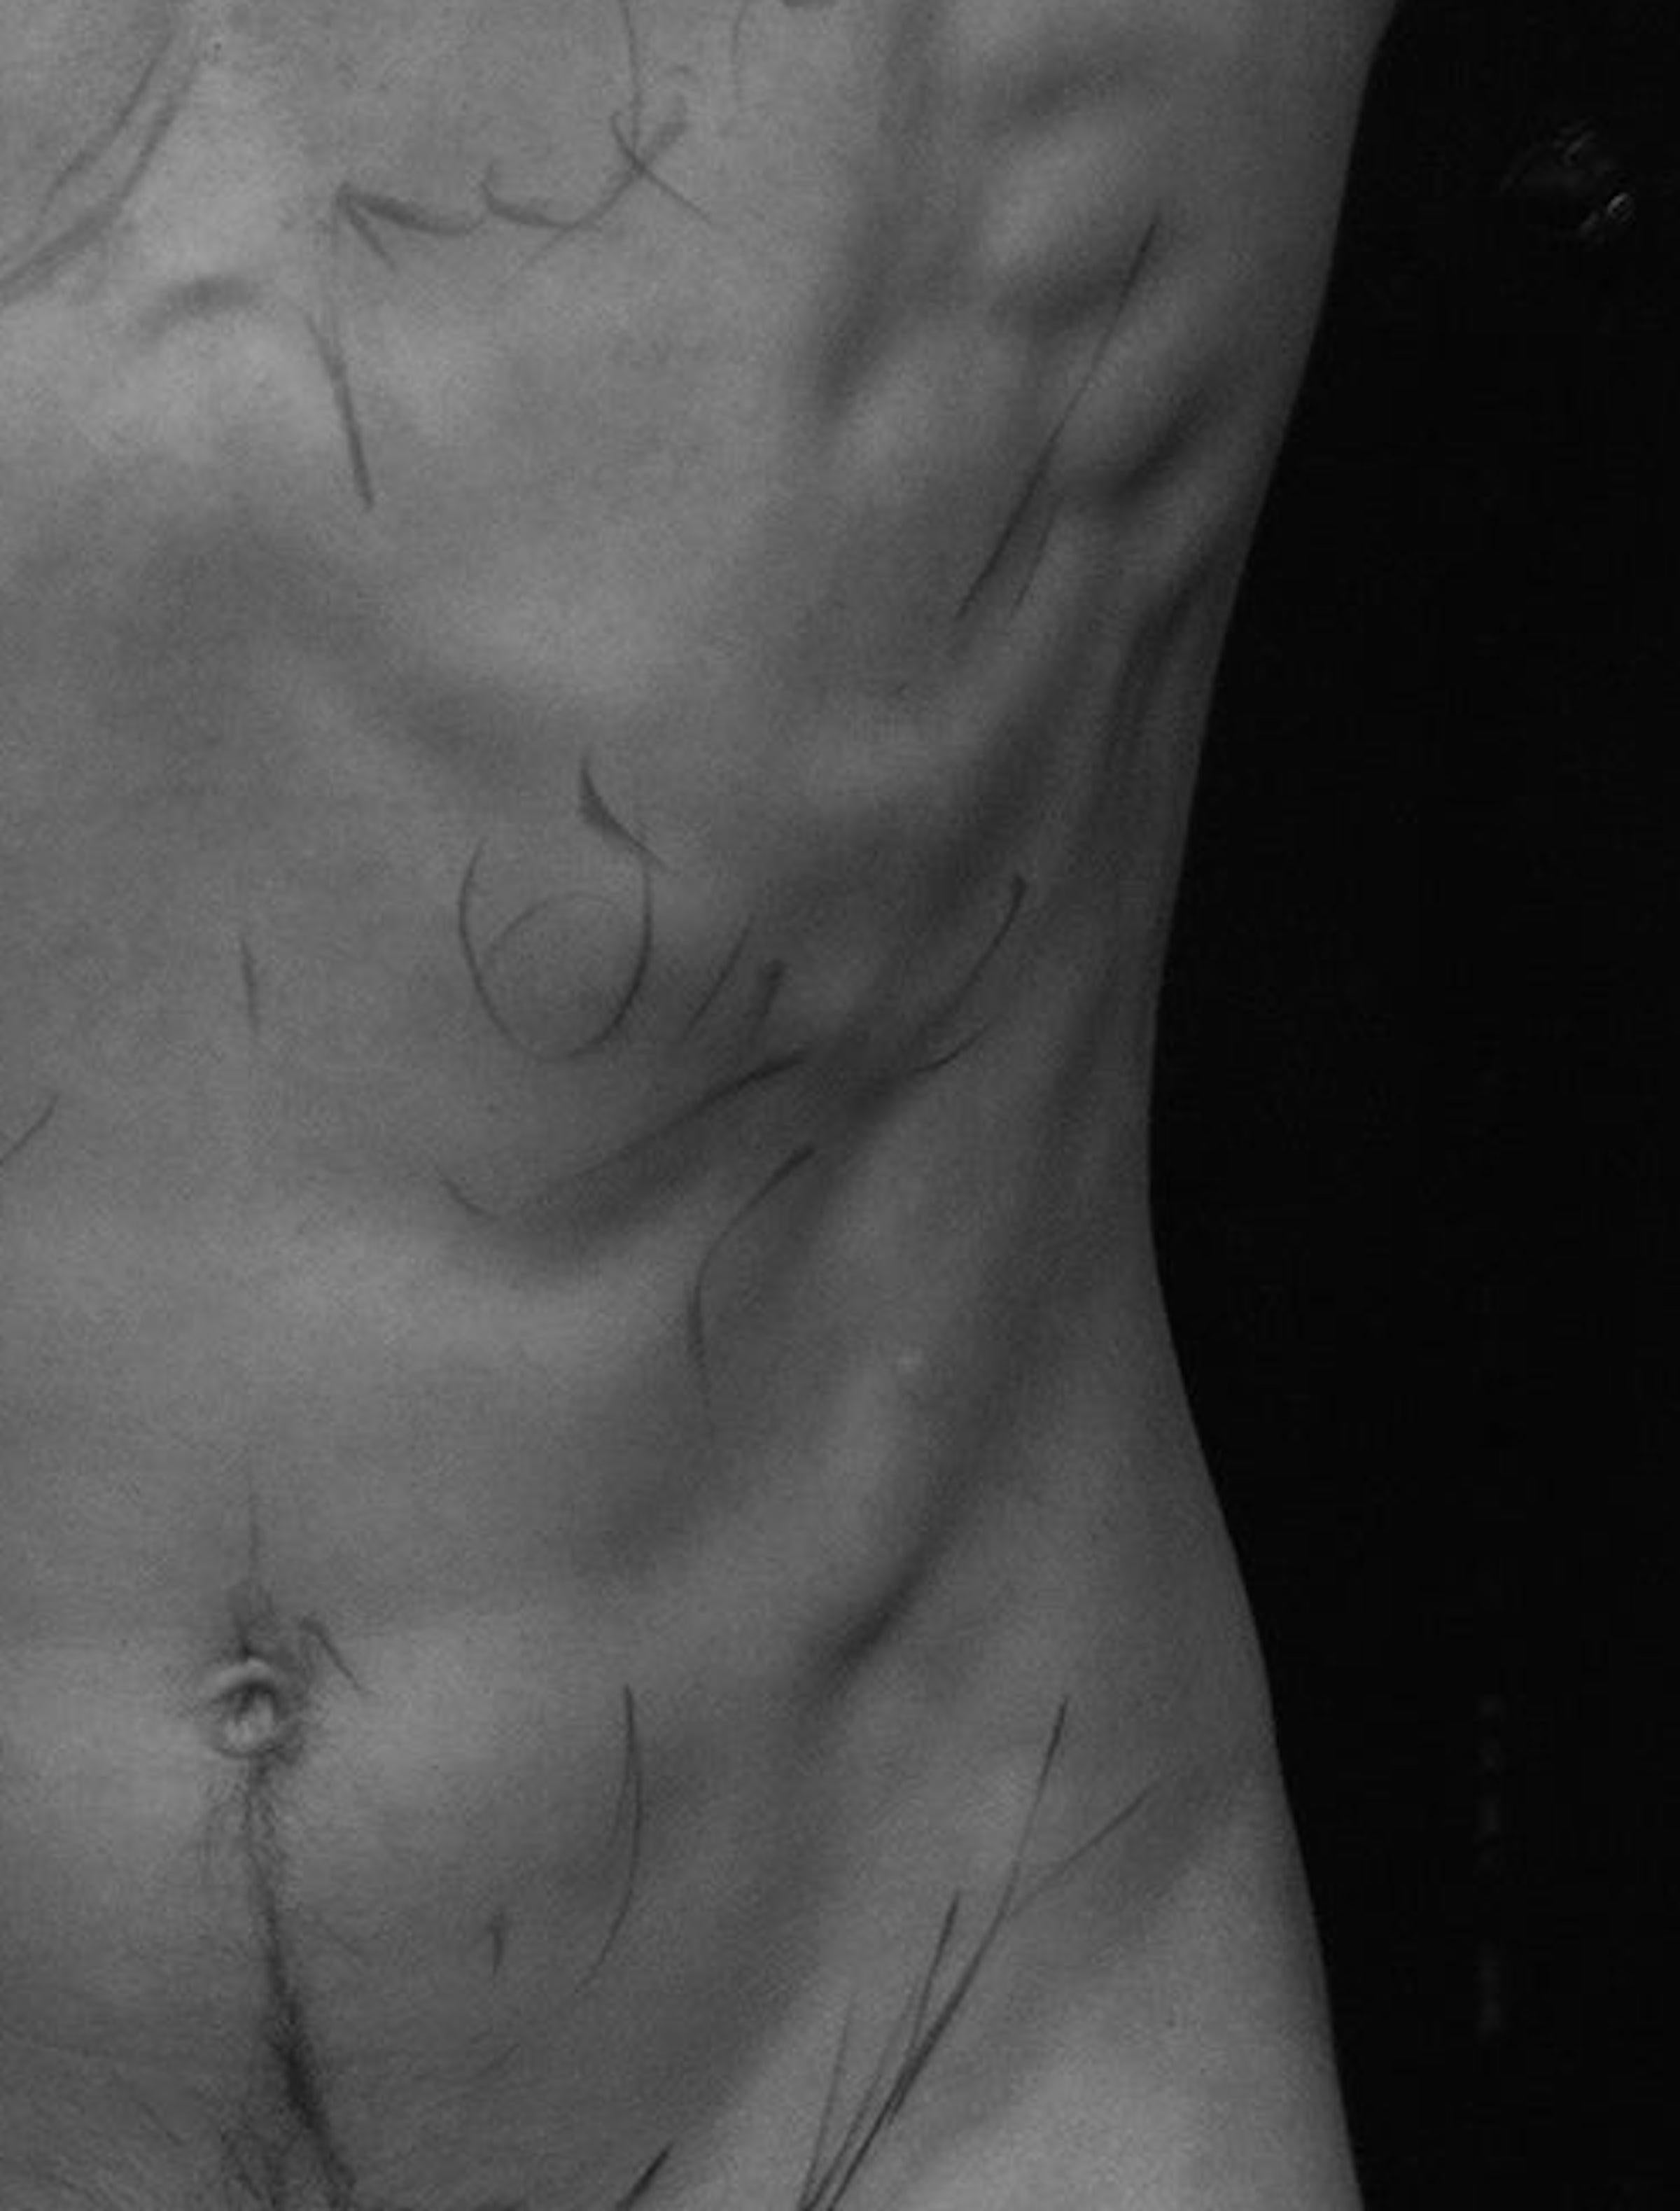 Körper, Nackt. Limitierte Auflage einer Schwarz-Weiß-Fotografie (Zeitgenössisch), Photograph, von Ricky Cohete